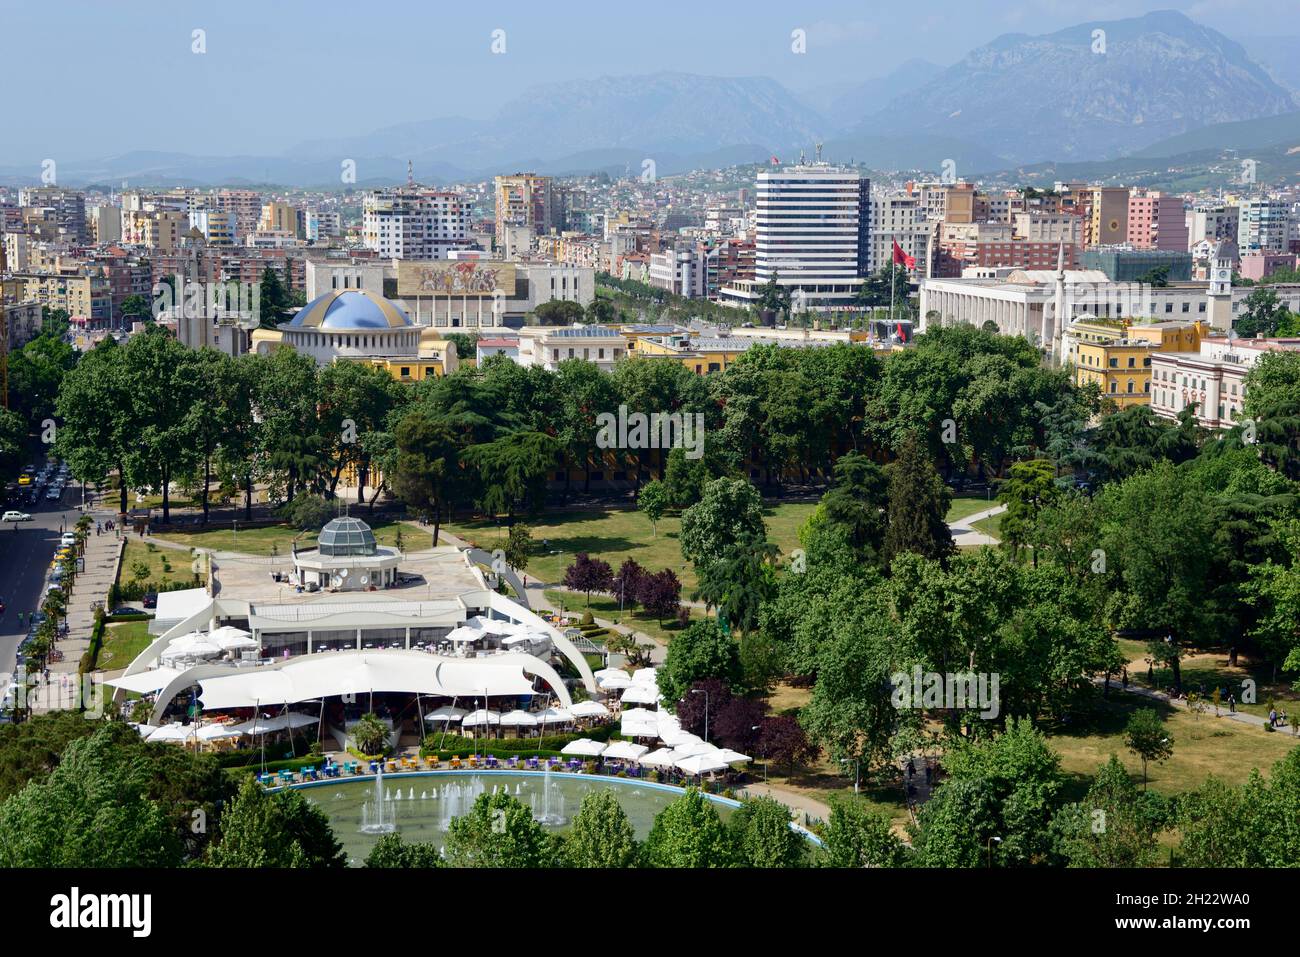 City centre with Rinia Park, Skanderbeg Square, view from Sky Tower, Tirana, Albania Stock Photo